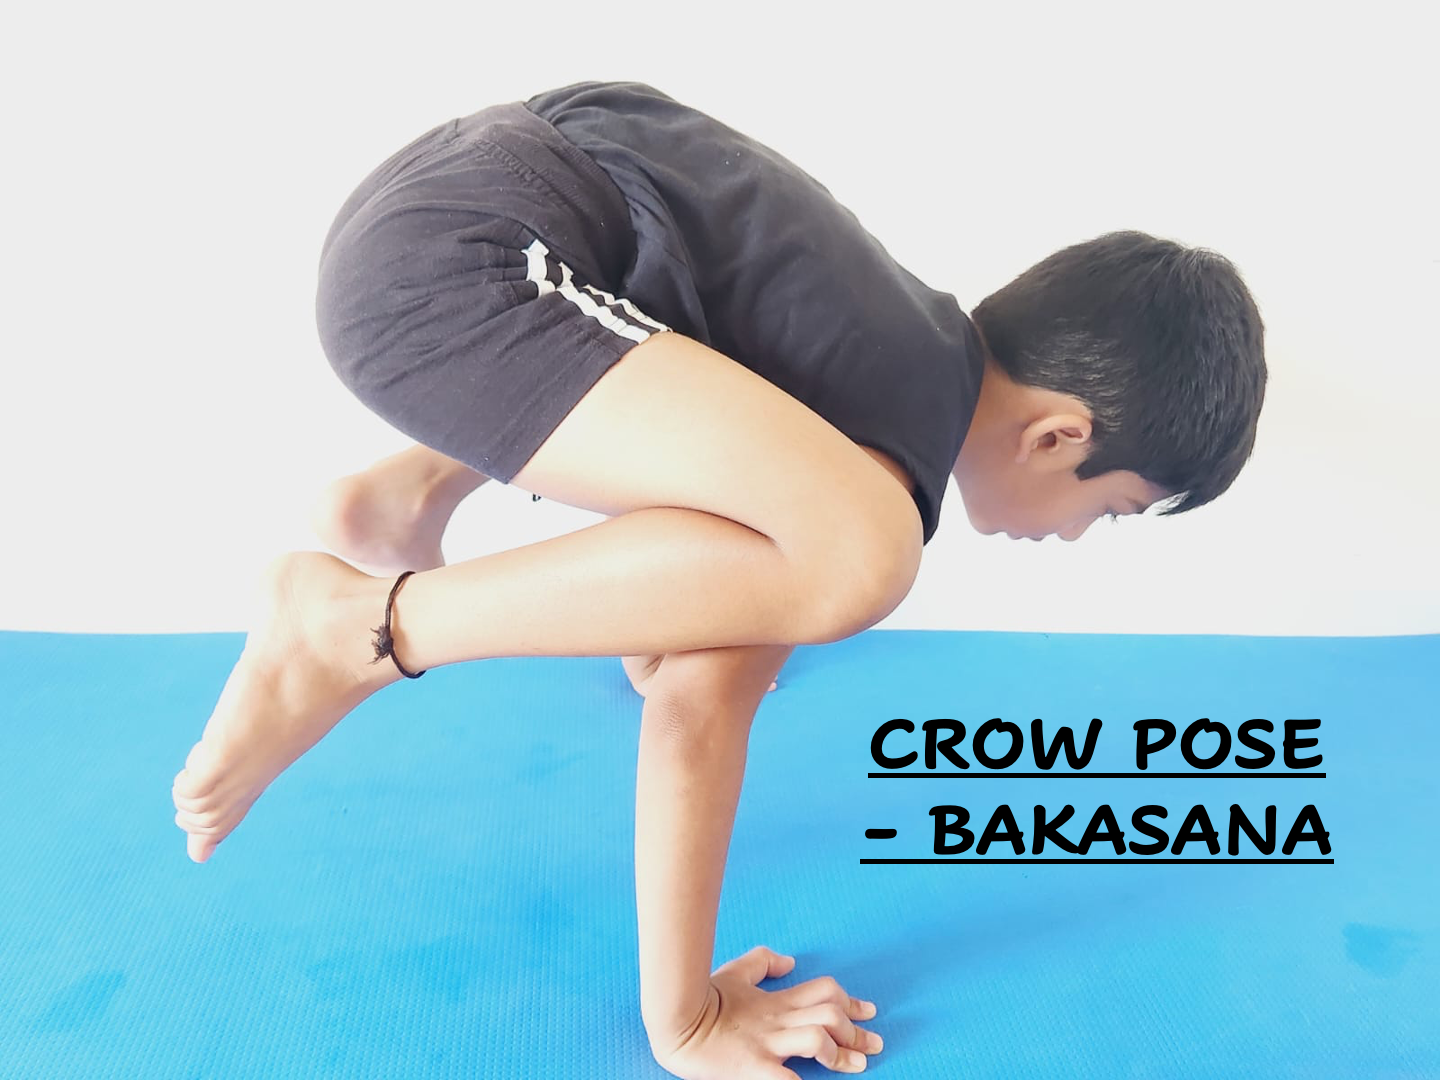 A preparation sequence for side crane pose | Prana Yoga